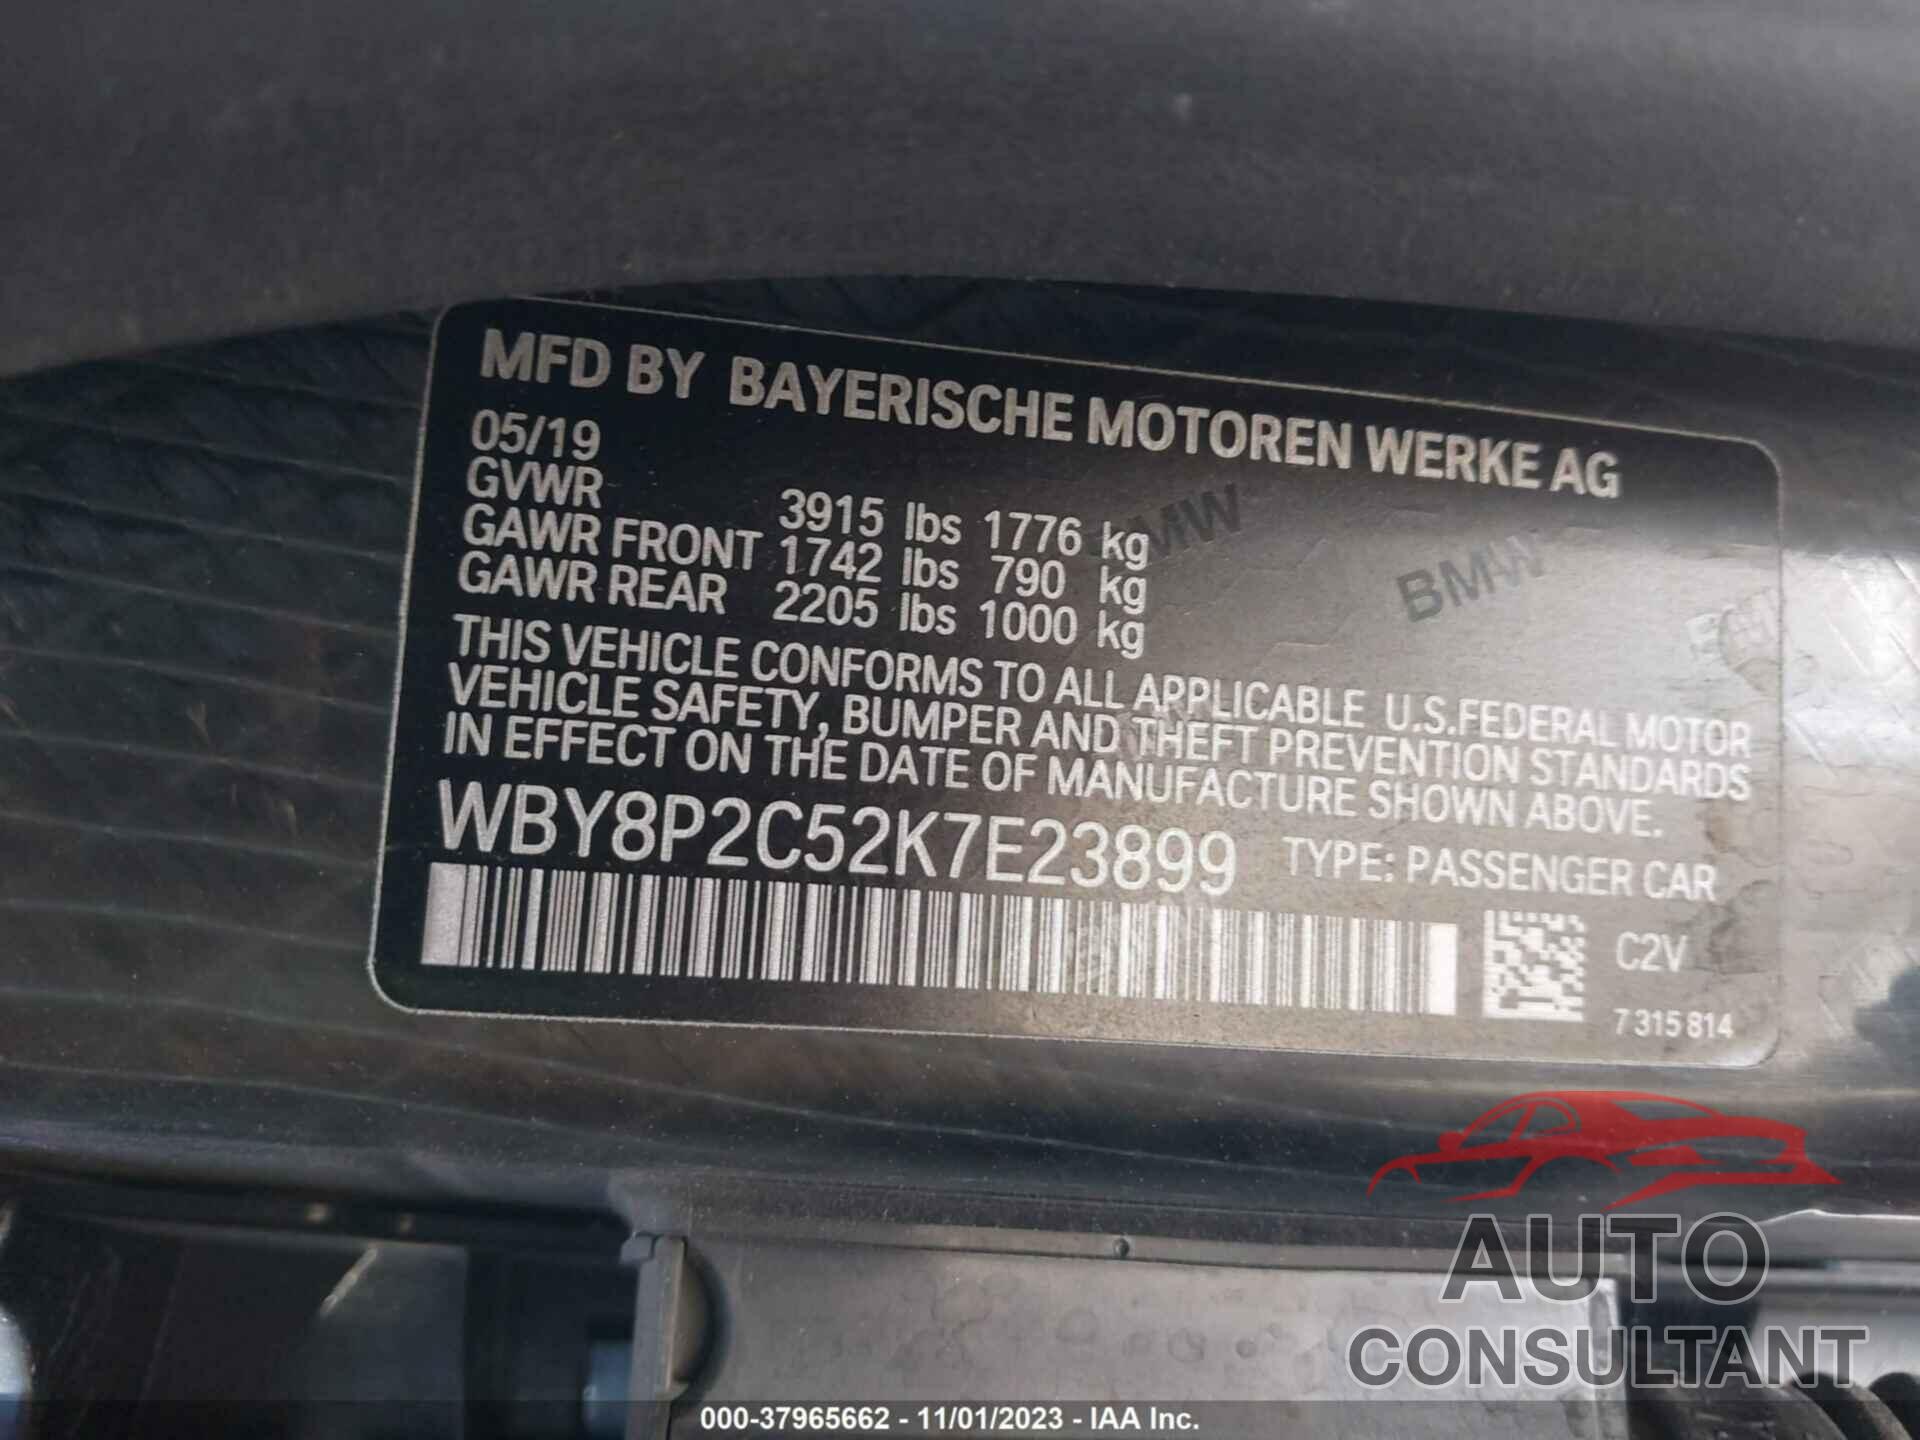 BMW I3 2019 - WBY8P2C52K7E23899